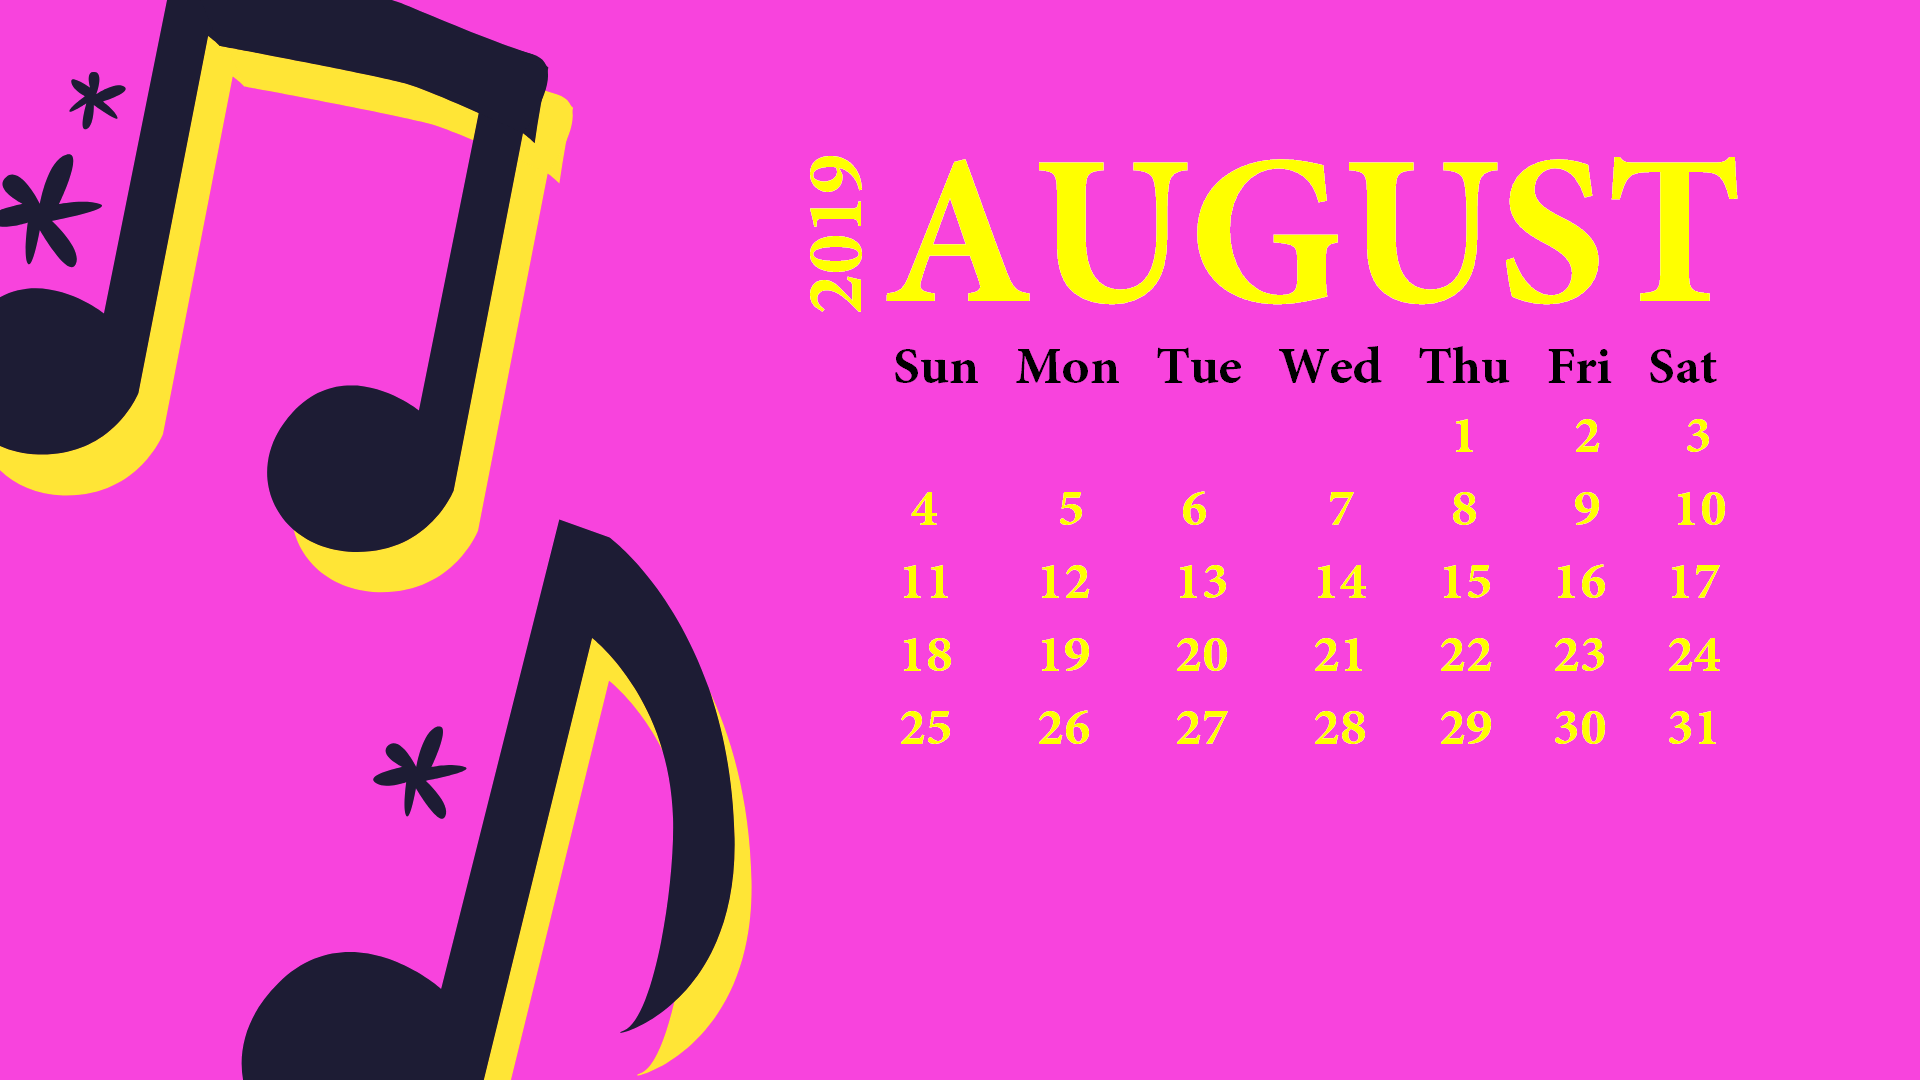 August 2019 Desktop Wallpaper With Calendar - August 2019 Desktop Calendar - HD Wallpaper 